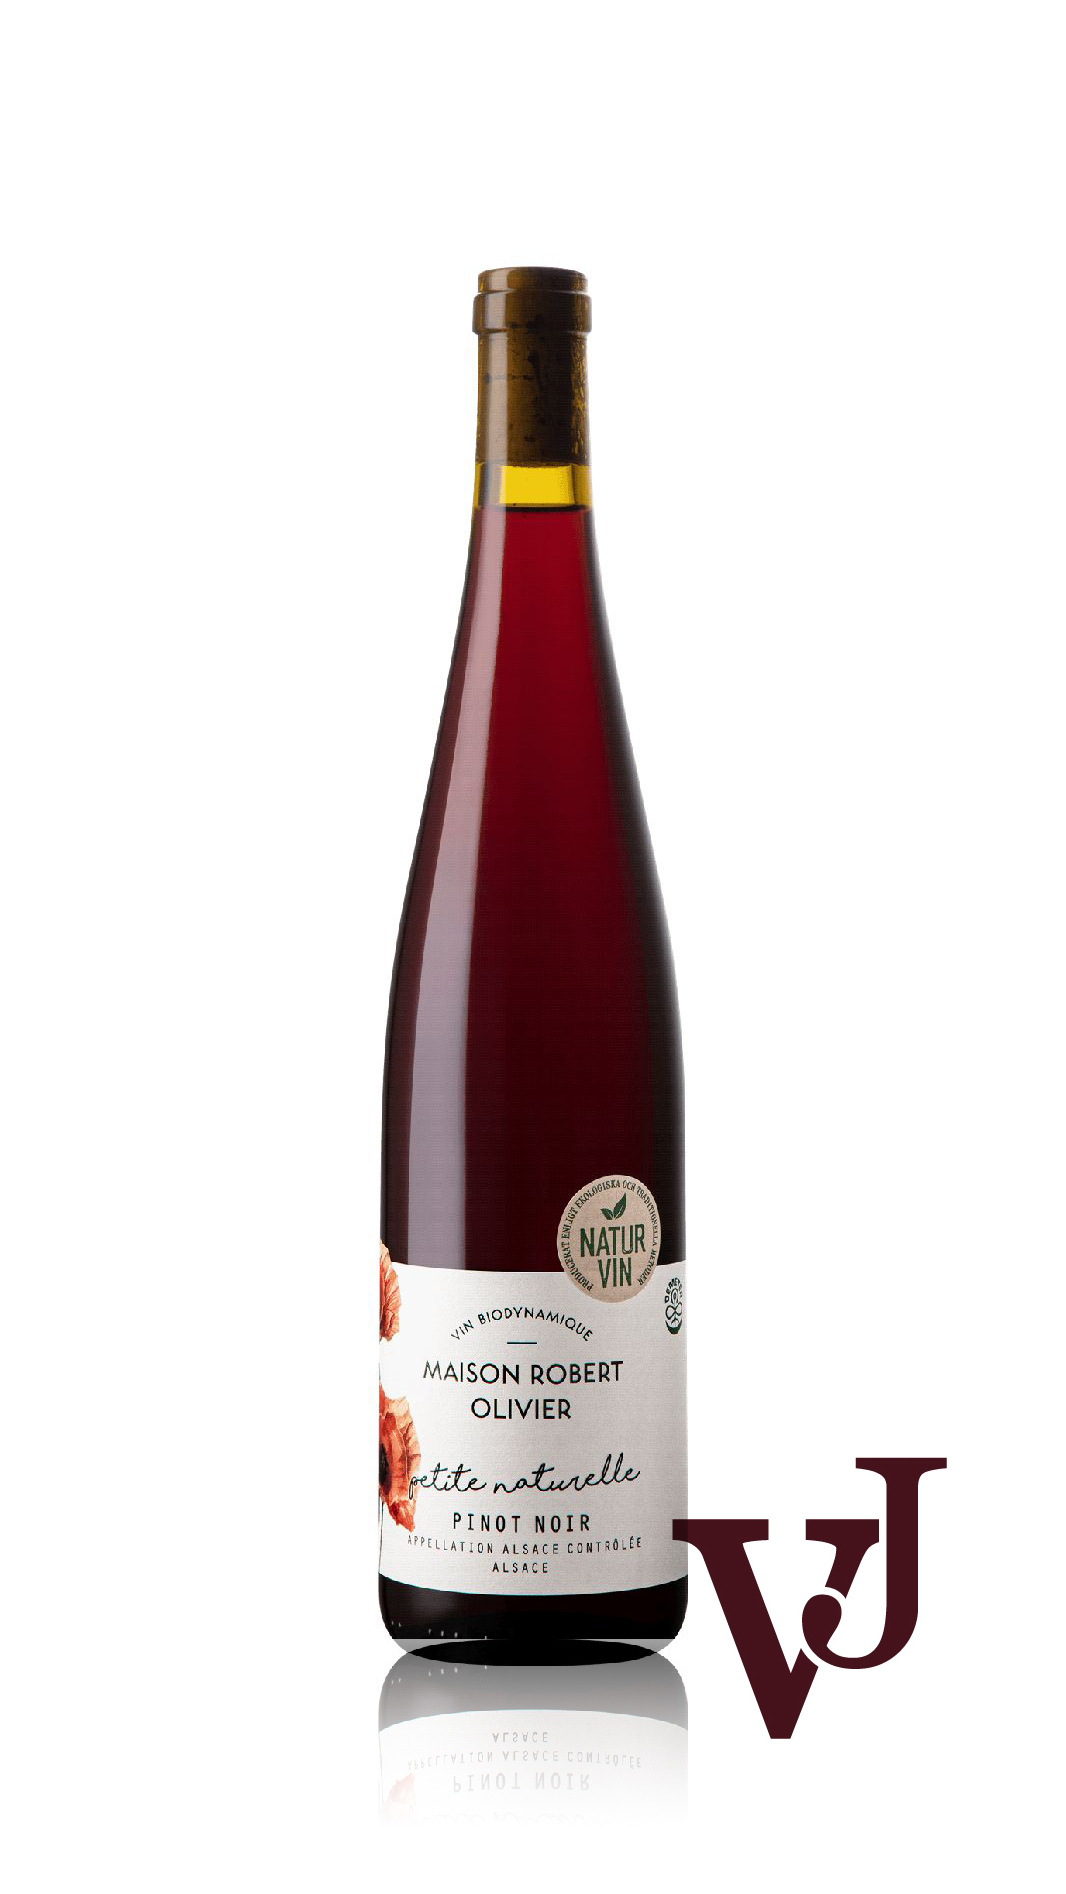 Rött Vin - Maison Robert Olivier Pinot Noir artikel nummer 7910401 från producenten Vins Biecher från området Frankrike